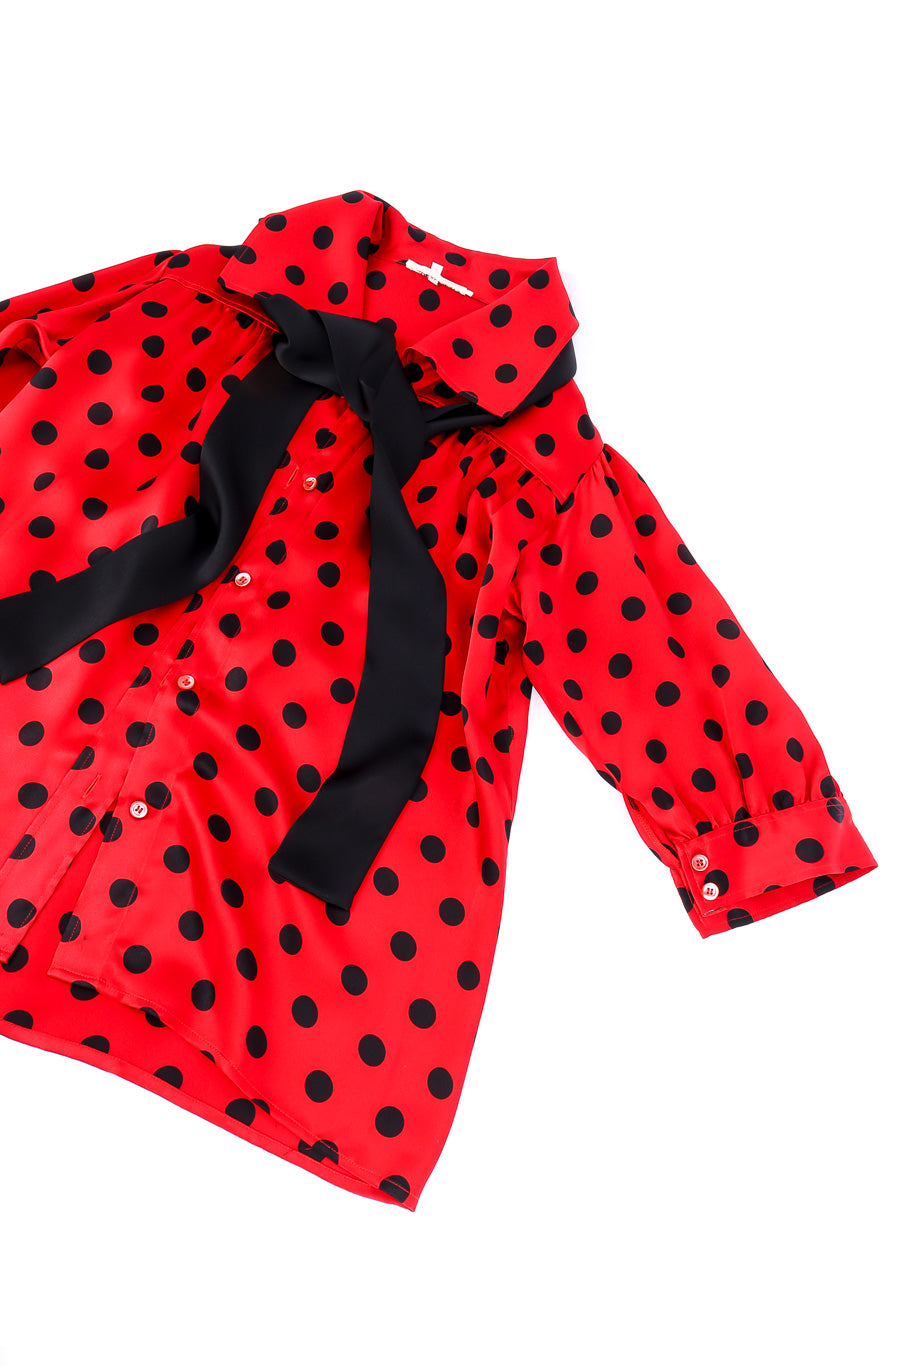 Yves Saint Laurent polka dot silk blouse flat-lay @recessla